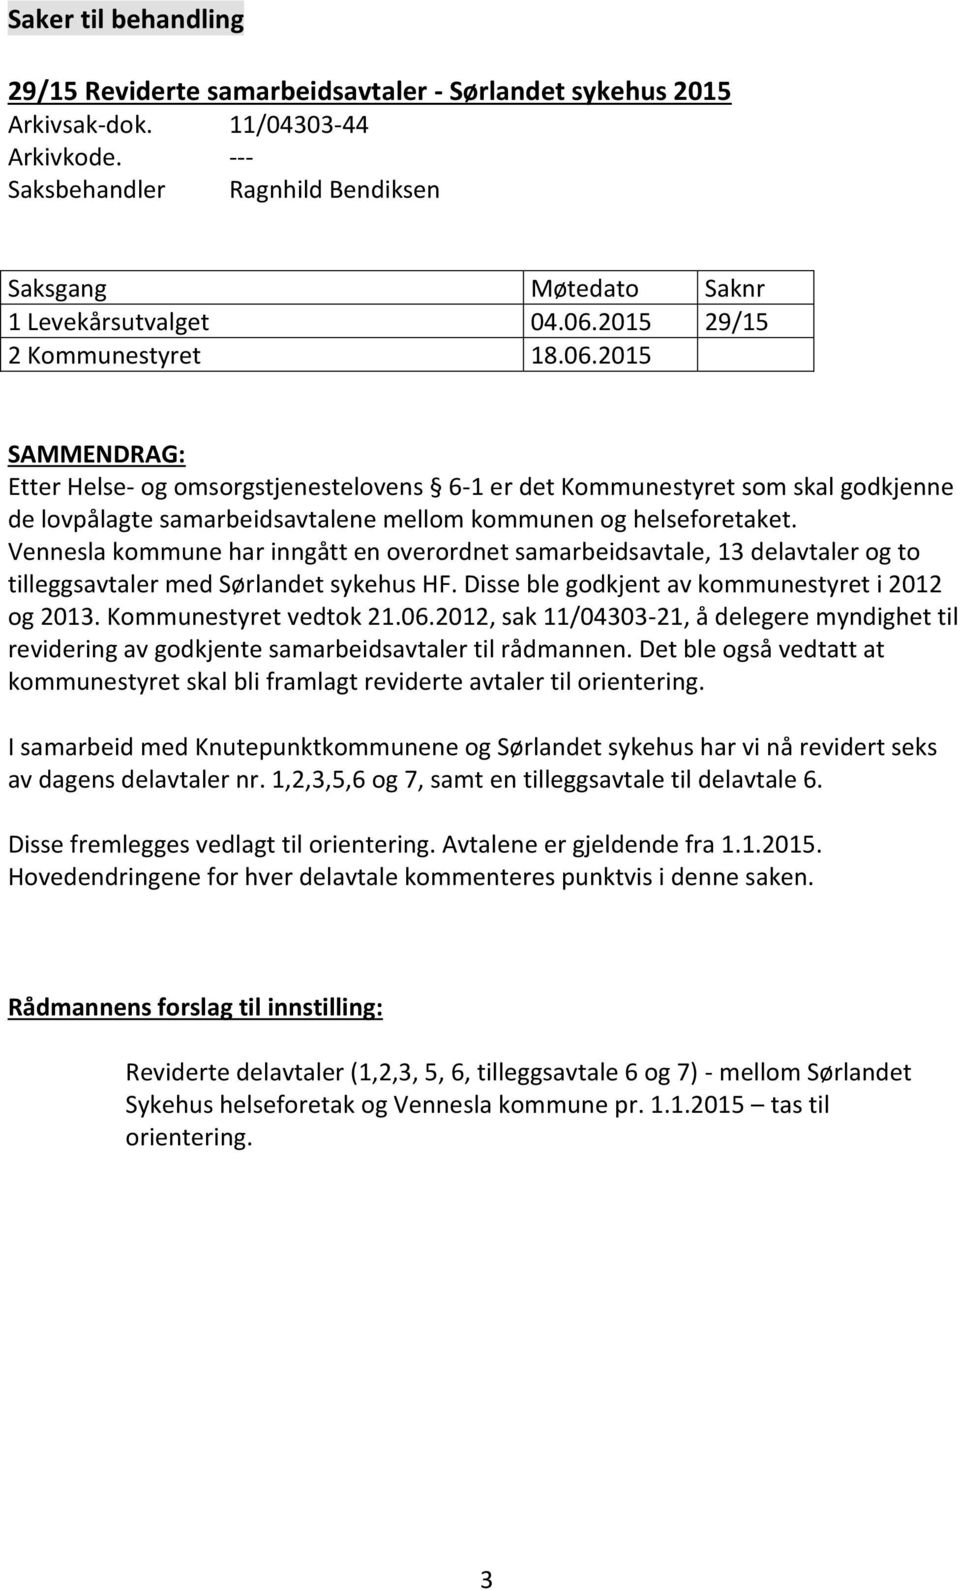 Vennesla kommune har inngått en overordnet samarbeidsavtale, 13 delavtaler og to tilleggsavtaler med Sørlandet sykehus HF. Disse ble godkjent av kommunestyret i 2012 og 2013. Kommunestyret vedtok 21.